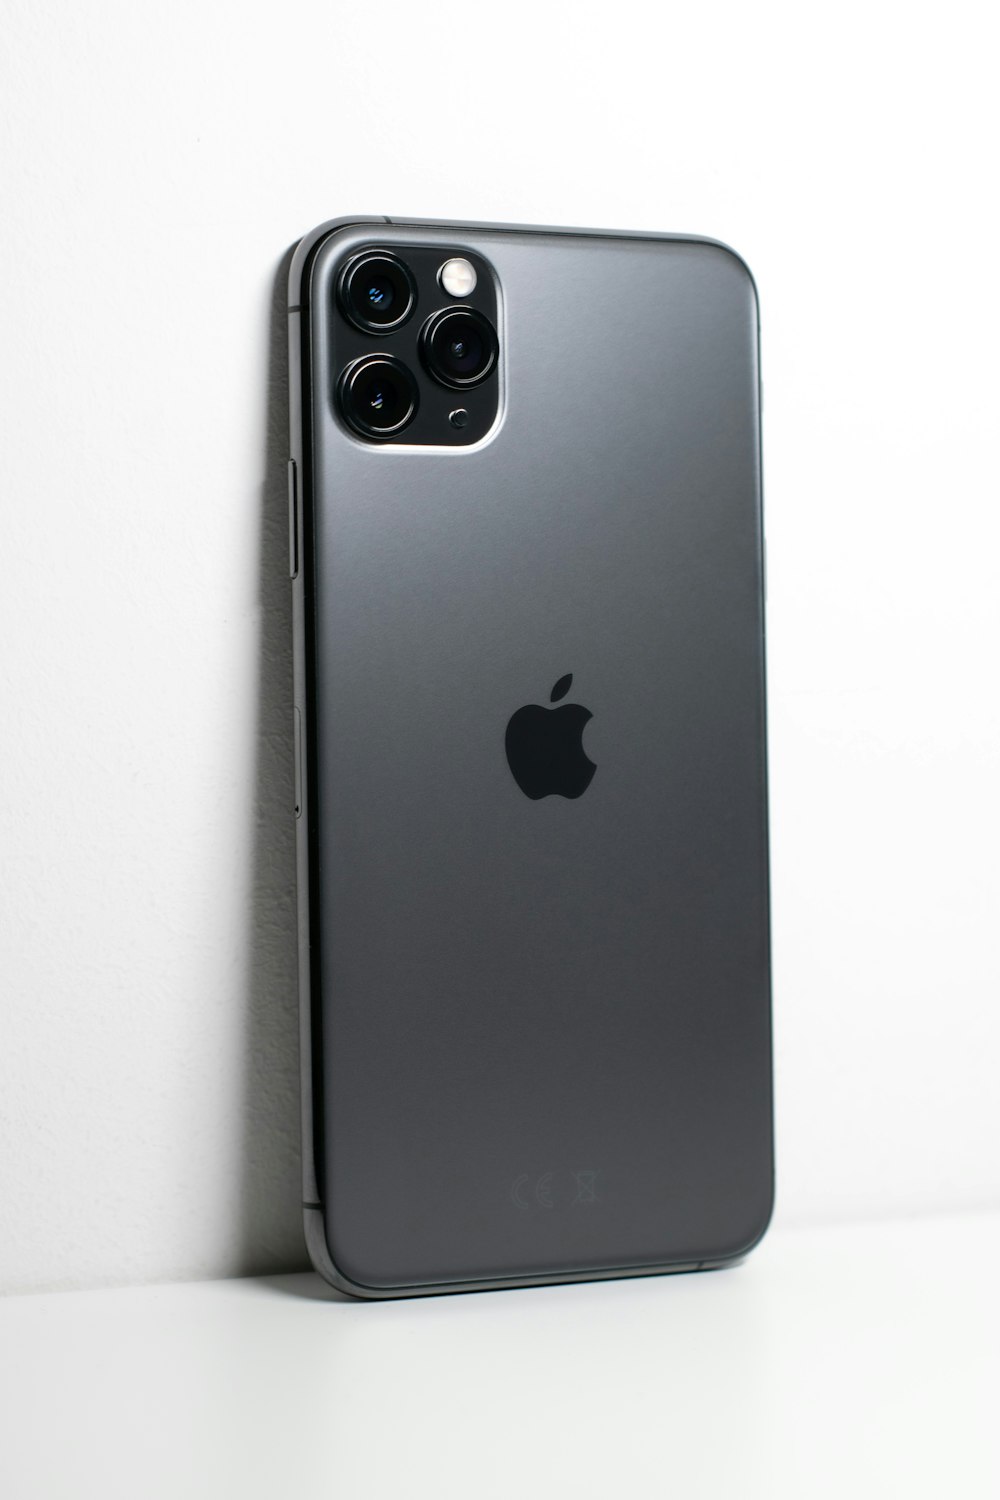 iPhone 7 Plus negro sobre superficie blanca